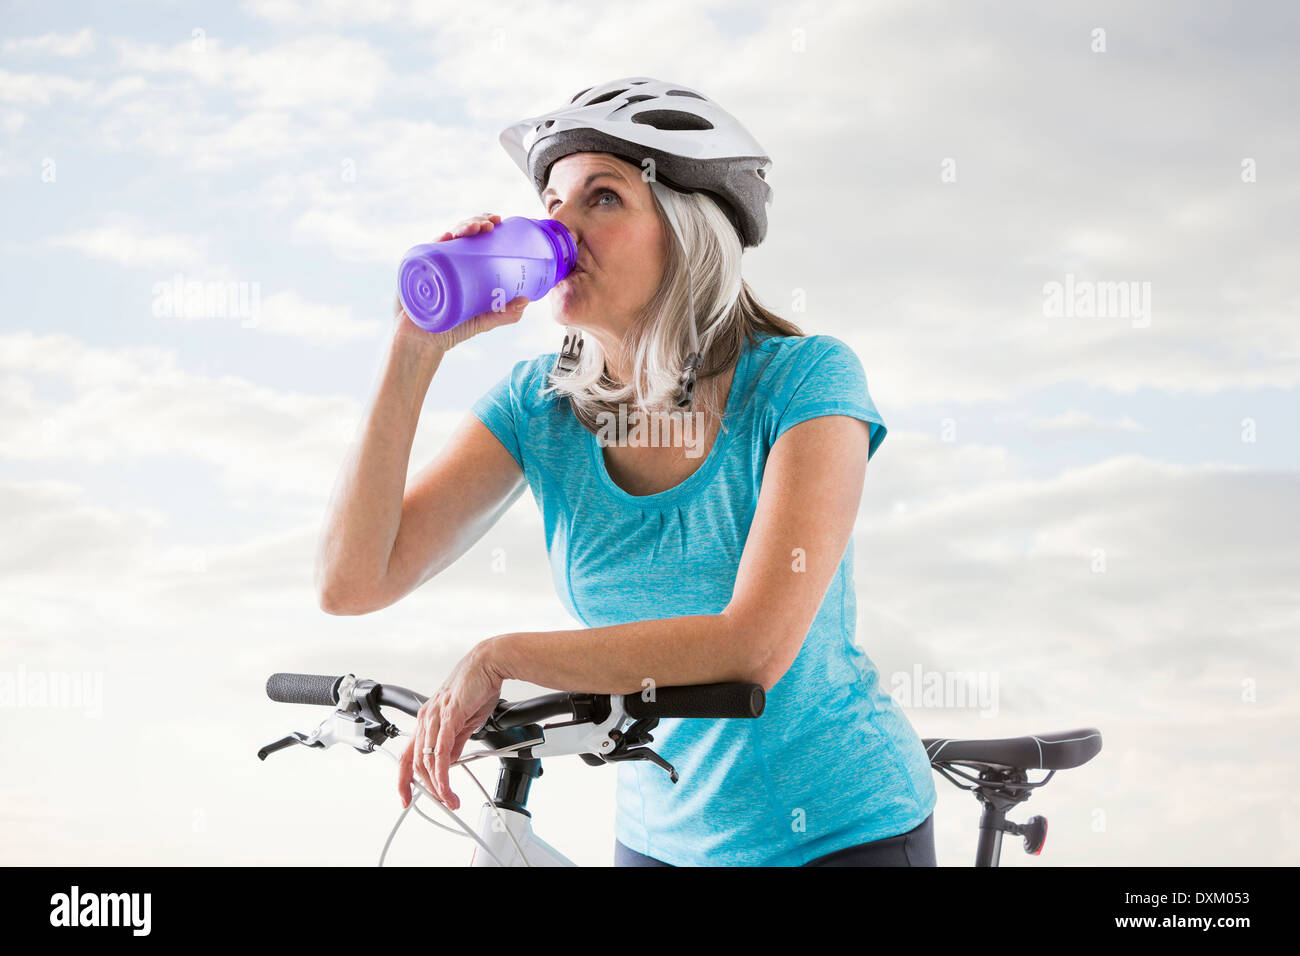 Kaukasische Frau trinkt aus Flasche Wasser auf dem Fahrrad Stockfoto